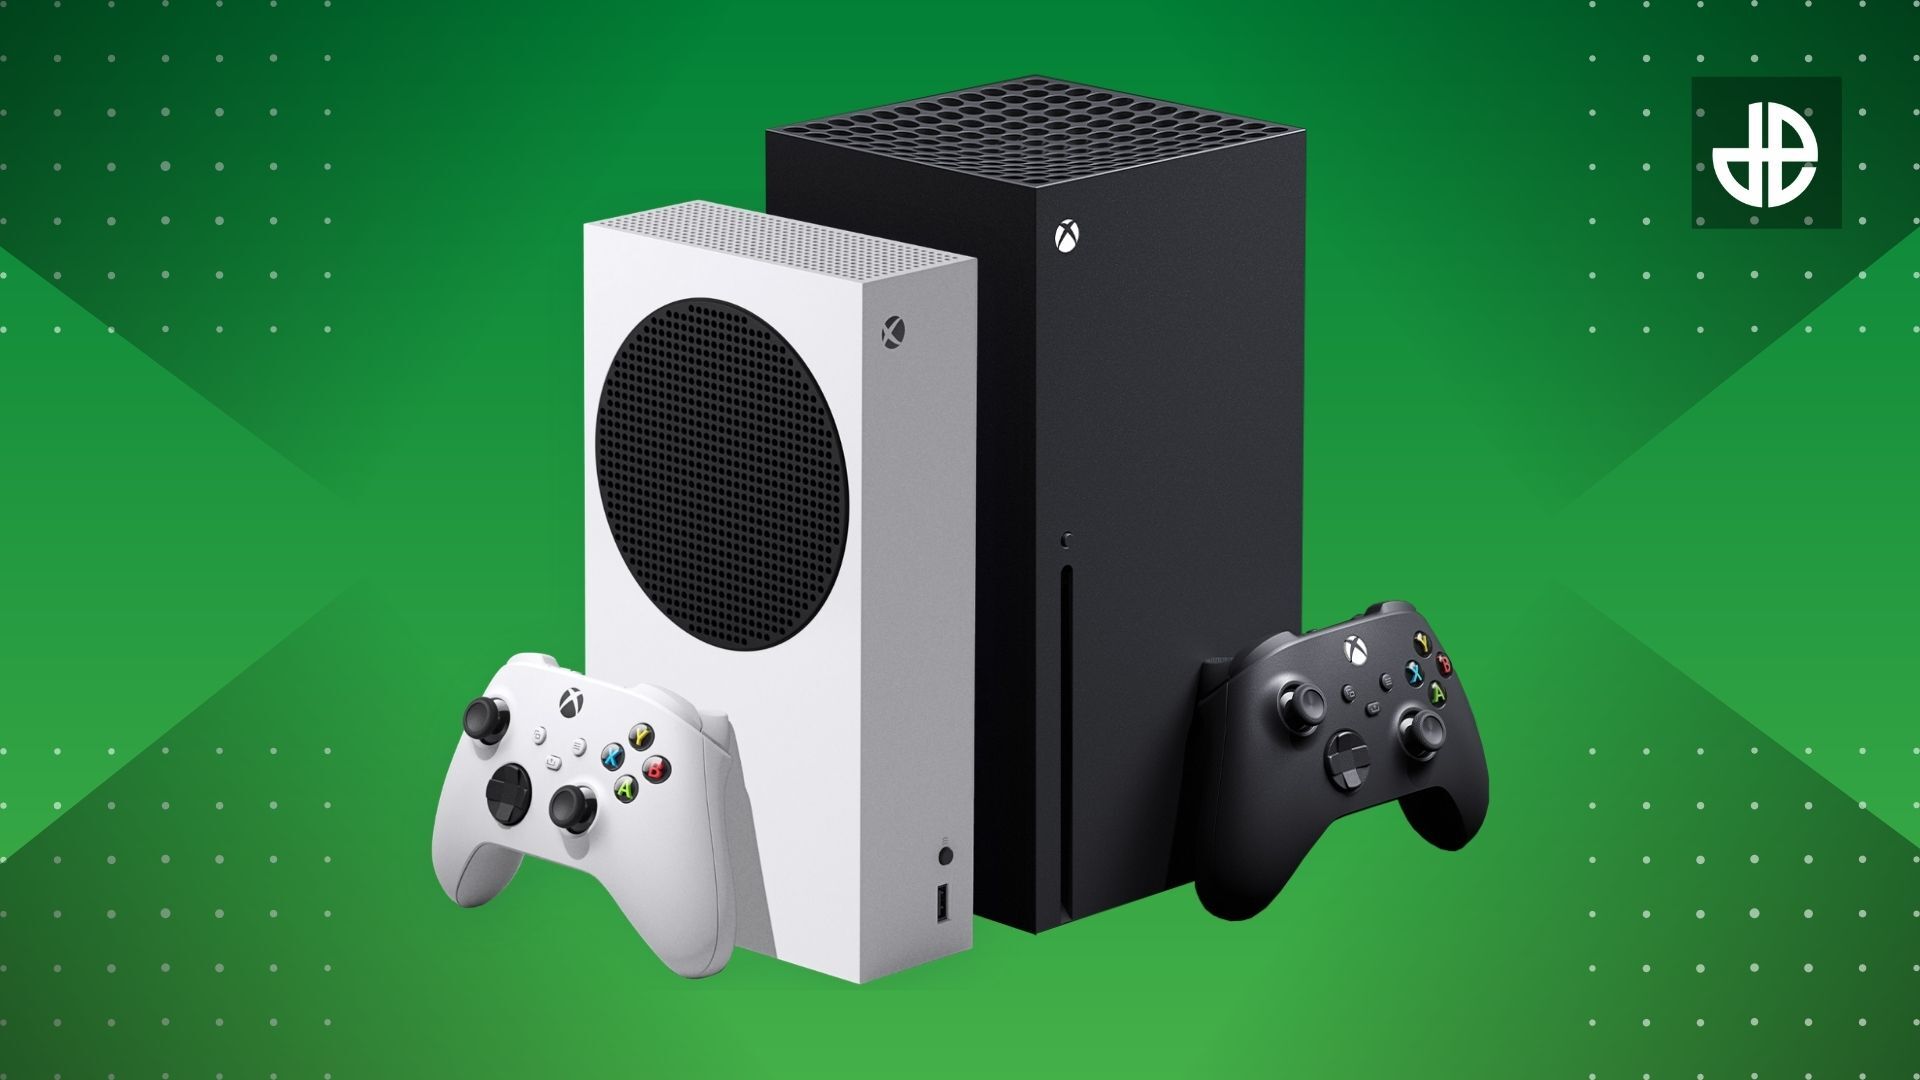 Hai phiên bản mới của Xbox đang gây chú ý lớn với những tính năng vượt trội và cập nhật kỹ thuật cao. So sánh giữa Xbox Series X và Xbox Series S sẽ giúp bạn có lựa chọn đúng đắn hơn để trải nghiệm thế giới game đầy thú vị. Qua hình ảnh, bạn sẽ thấy sự khác biệt đáng kể giữa hai sản phẩm này.